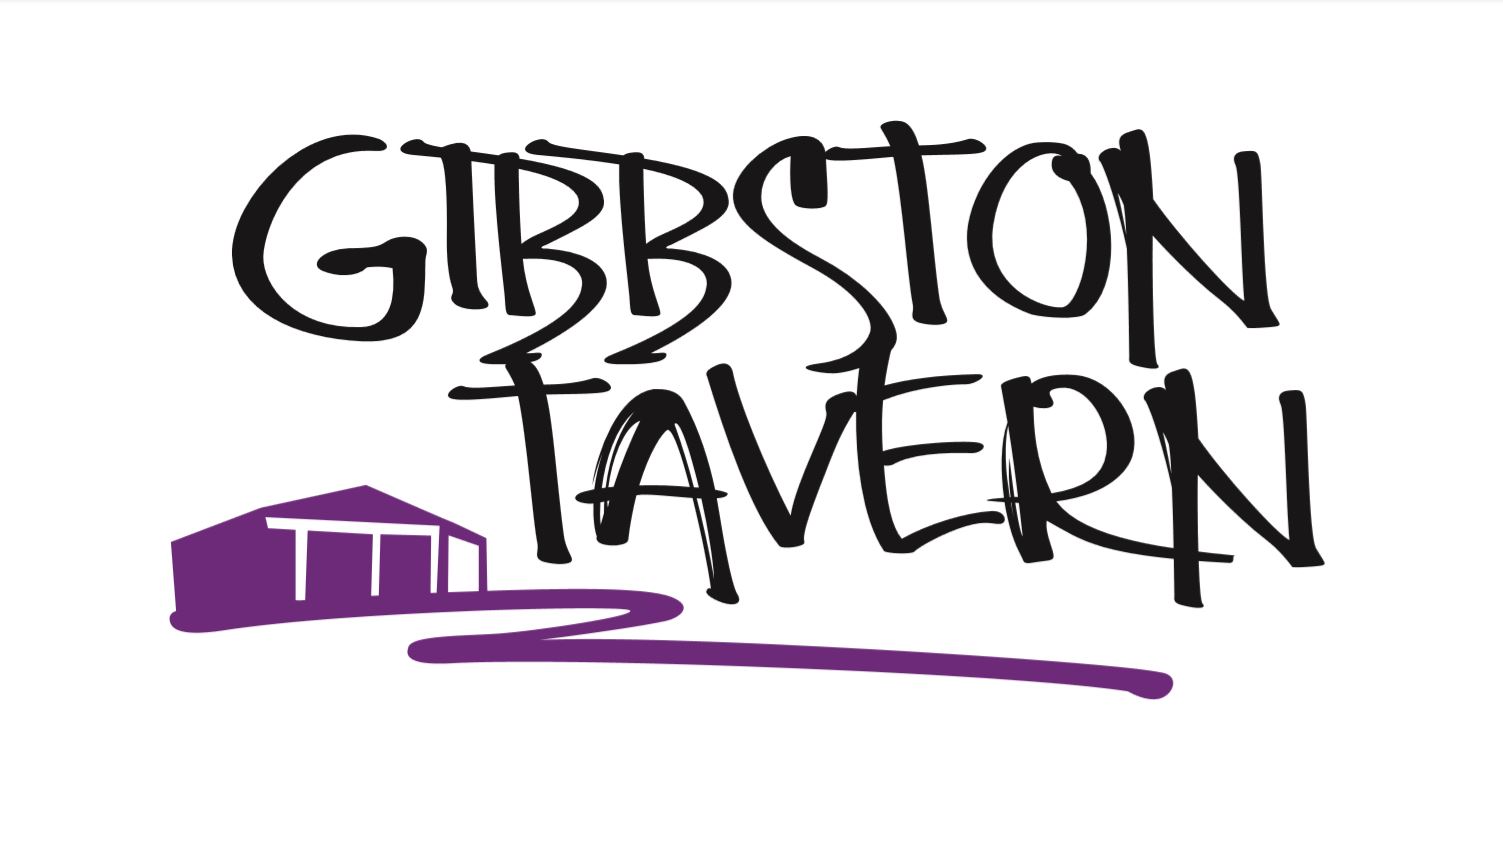 Gibbston Tavern Logo